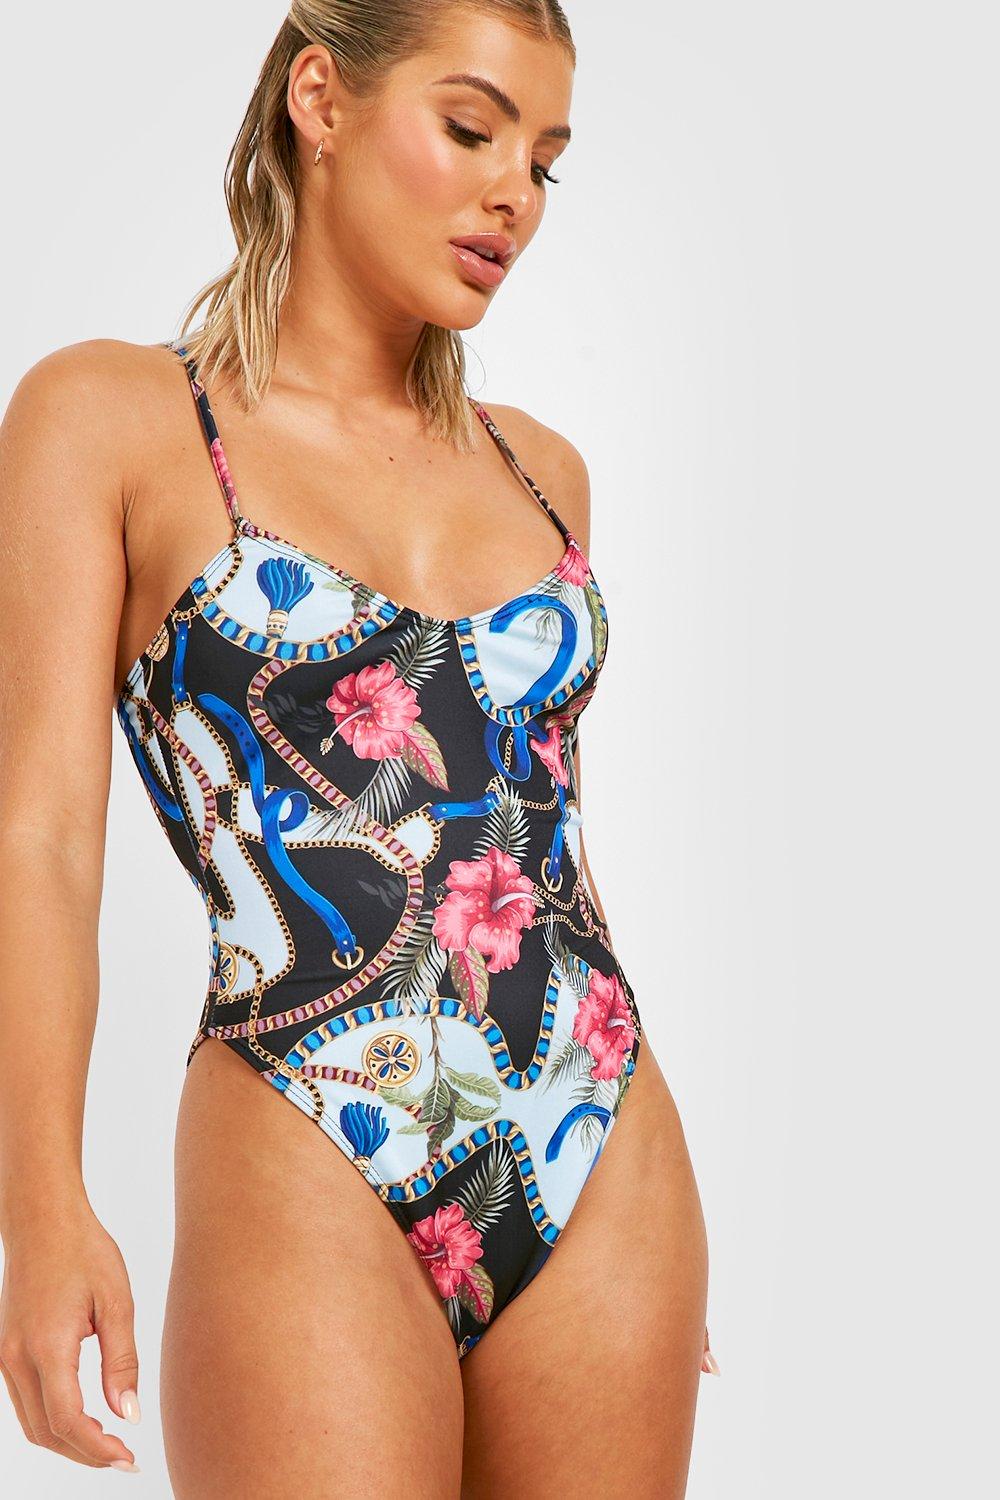 Floral Plunge One Piece Swimsuit, Women's Swimwear UK